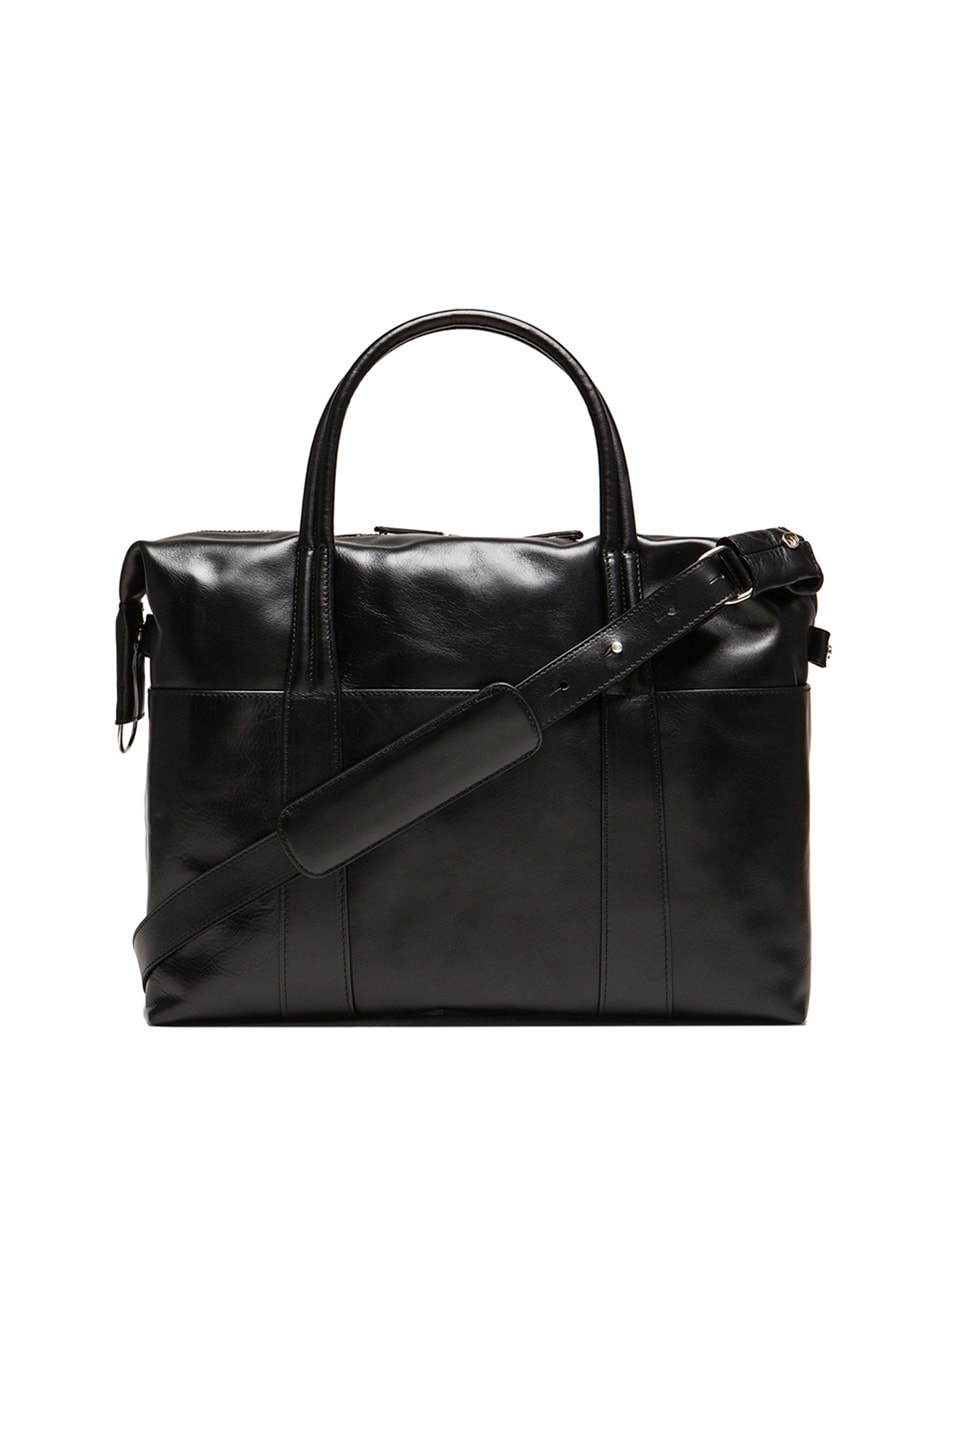 Maison Margiela Leather Duffel Bag in Black | FWRD